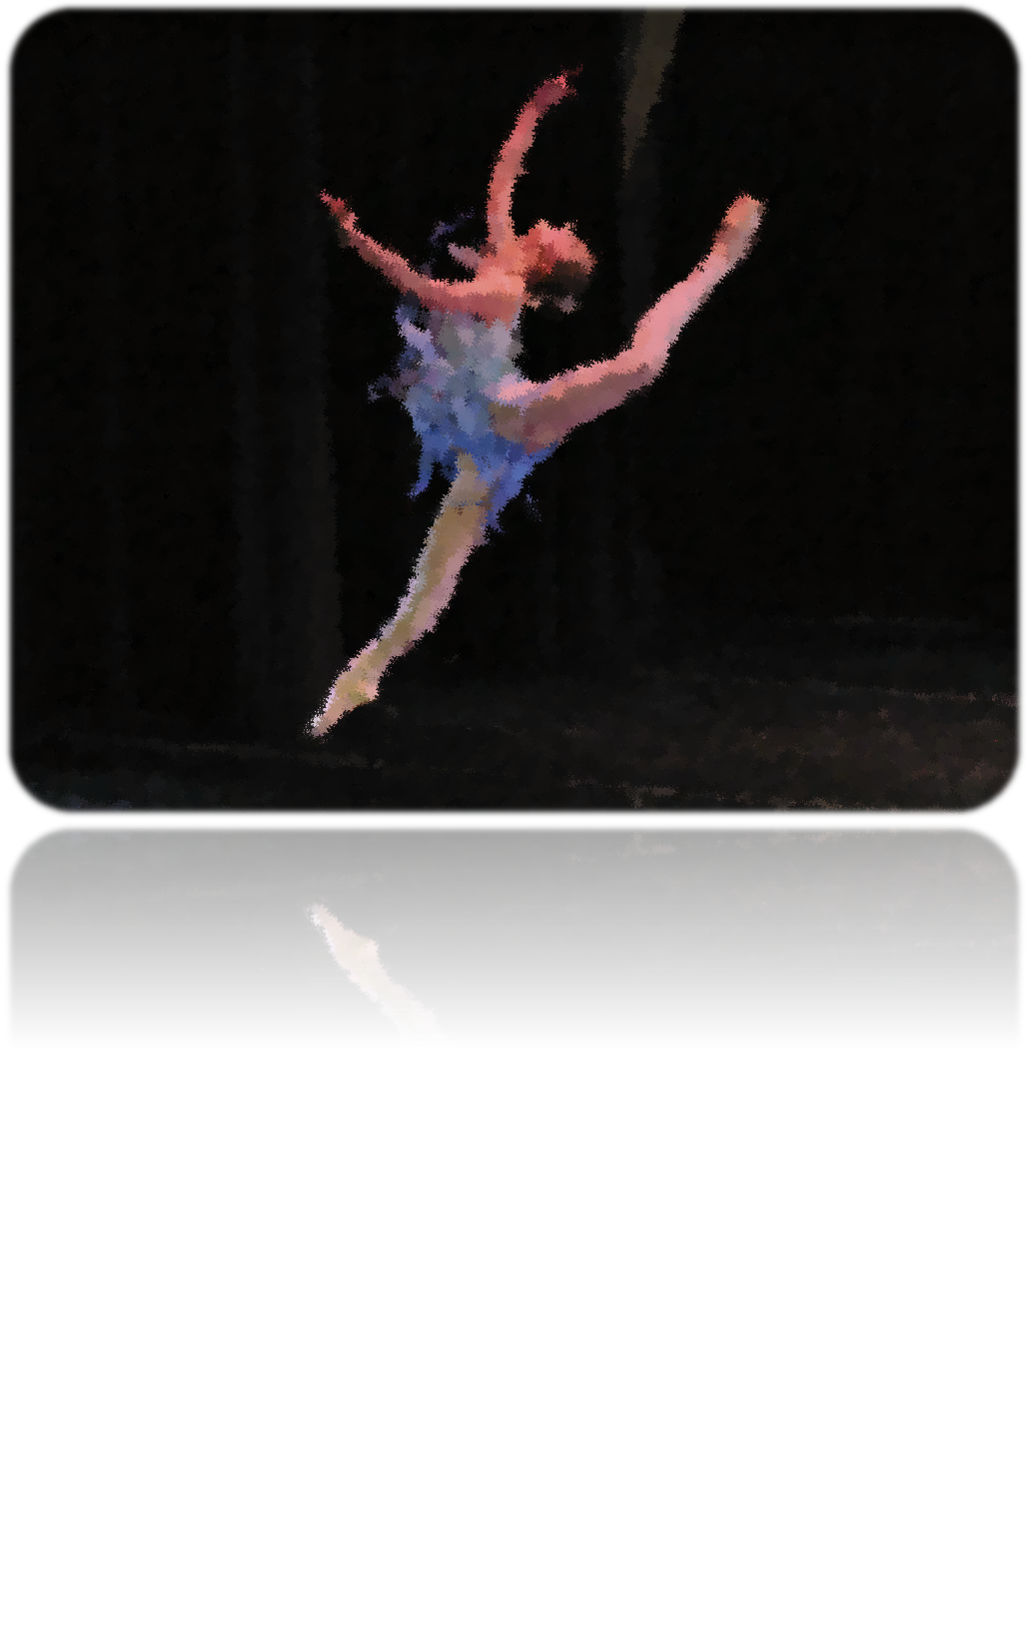 Edite esta imagen a través de Power Point, es la imagen de una bailarina, y la edite para que pareciera una pintura.